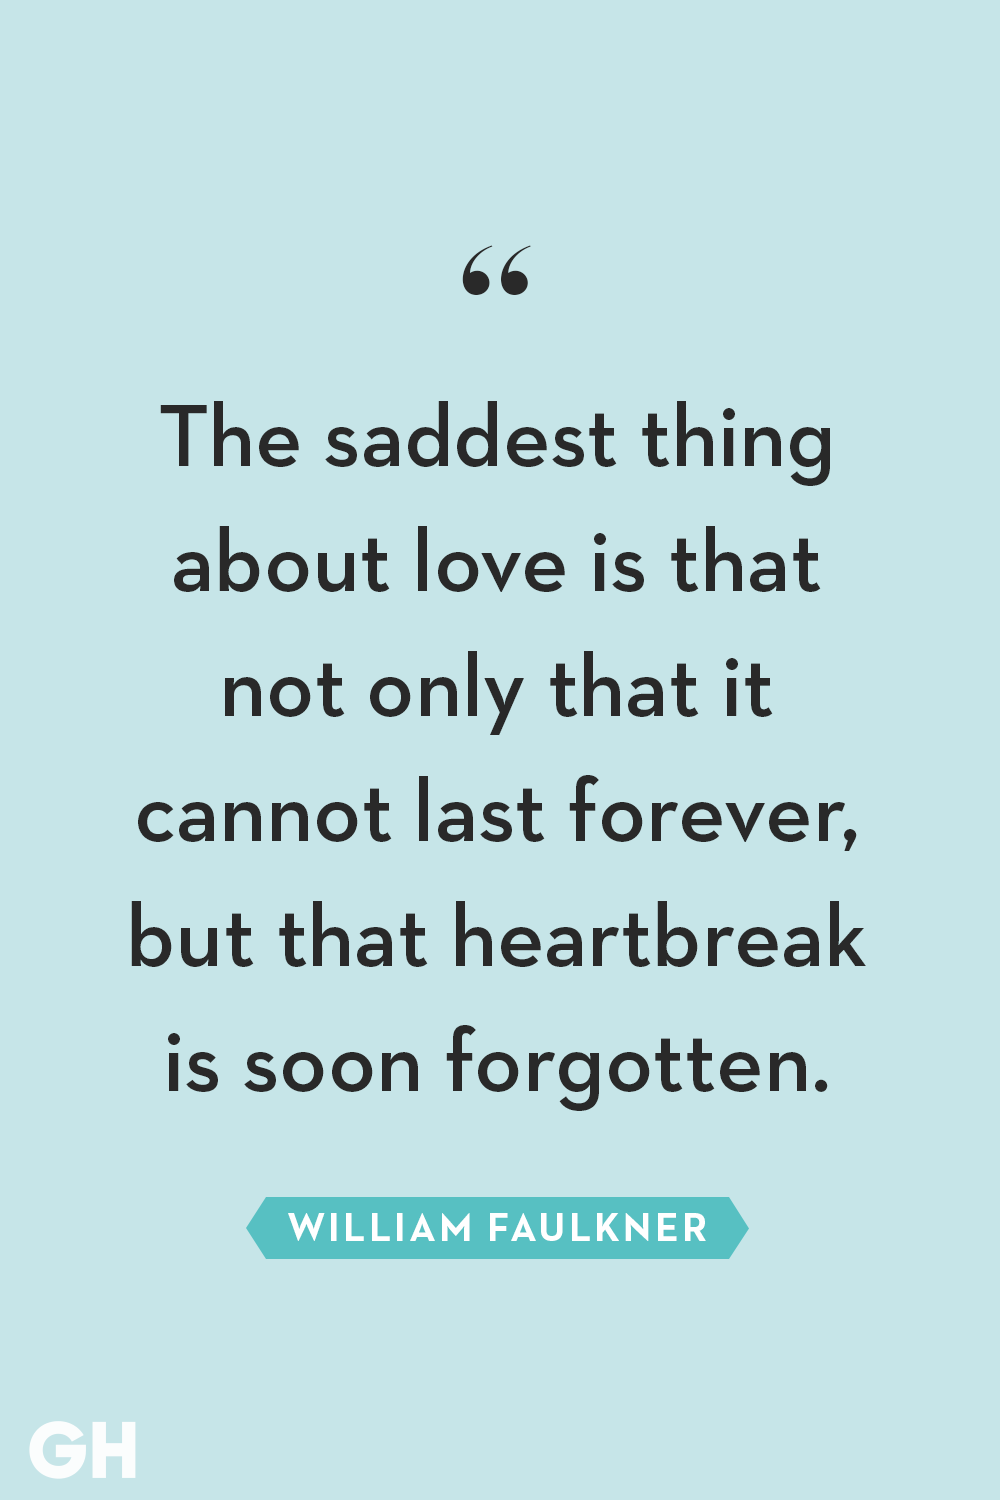 ghk-heartbreak-quotes-william-faulkner-1547150223.png